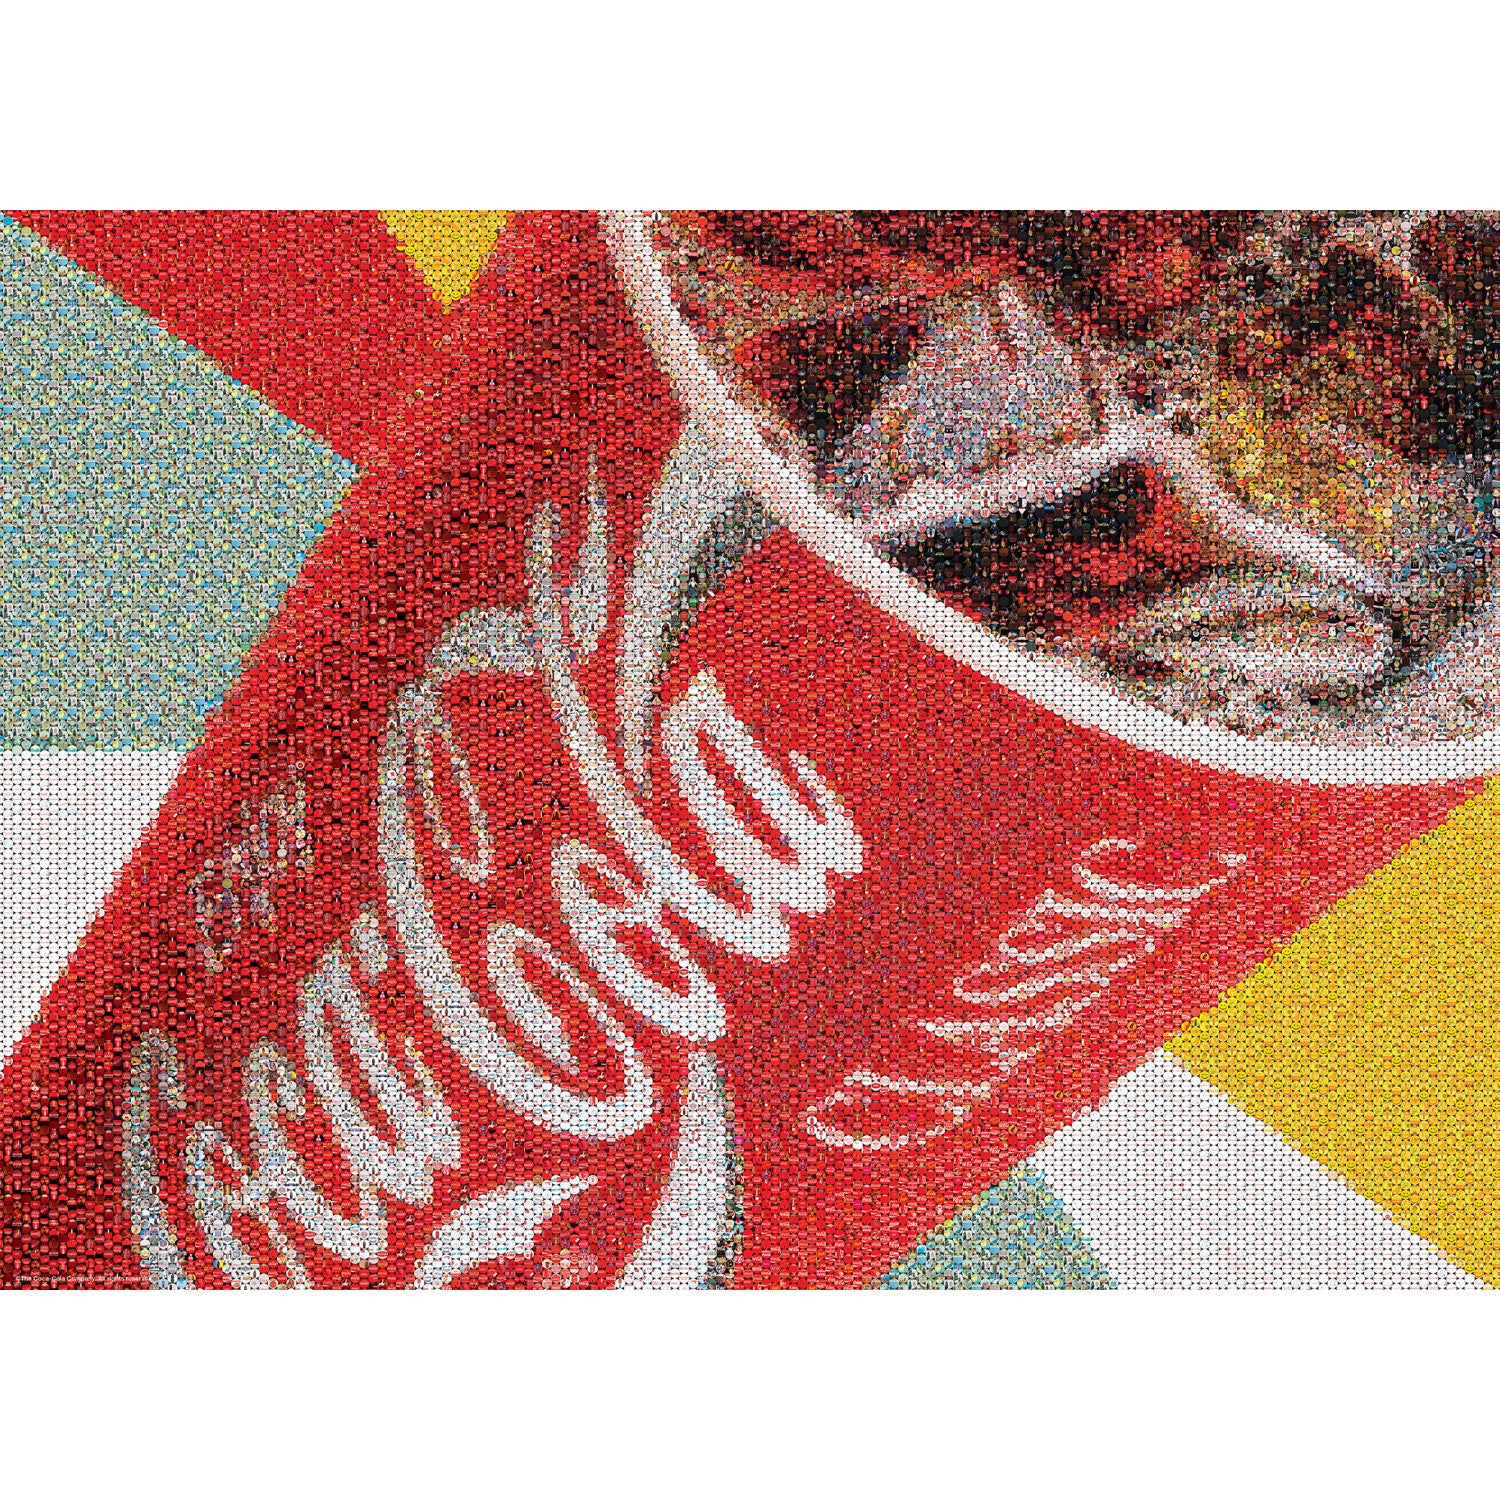 masterpieces-coca-cola-photomosaic-big-gulp-1000-piece-puzzle